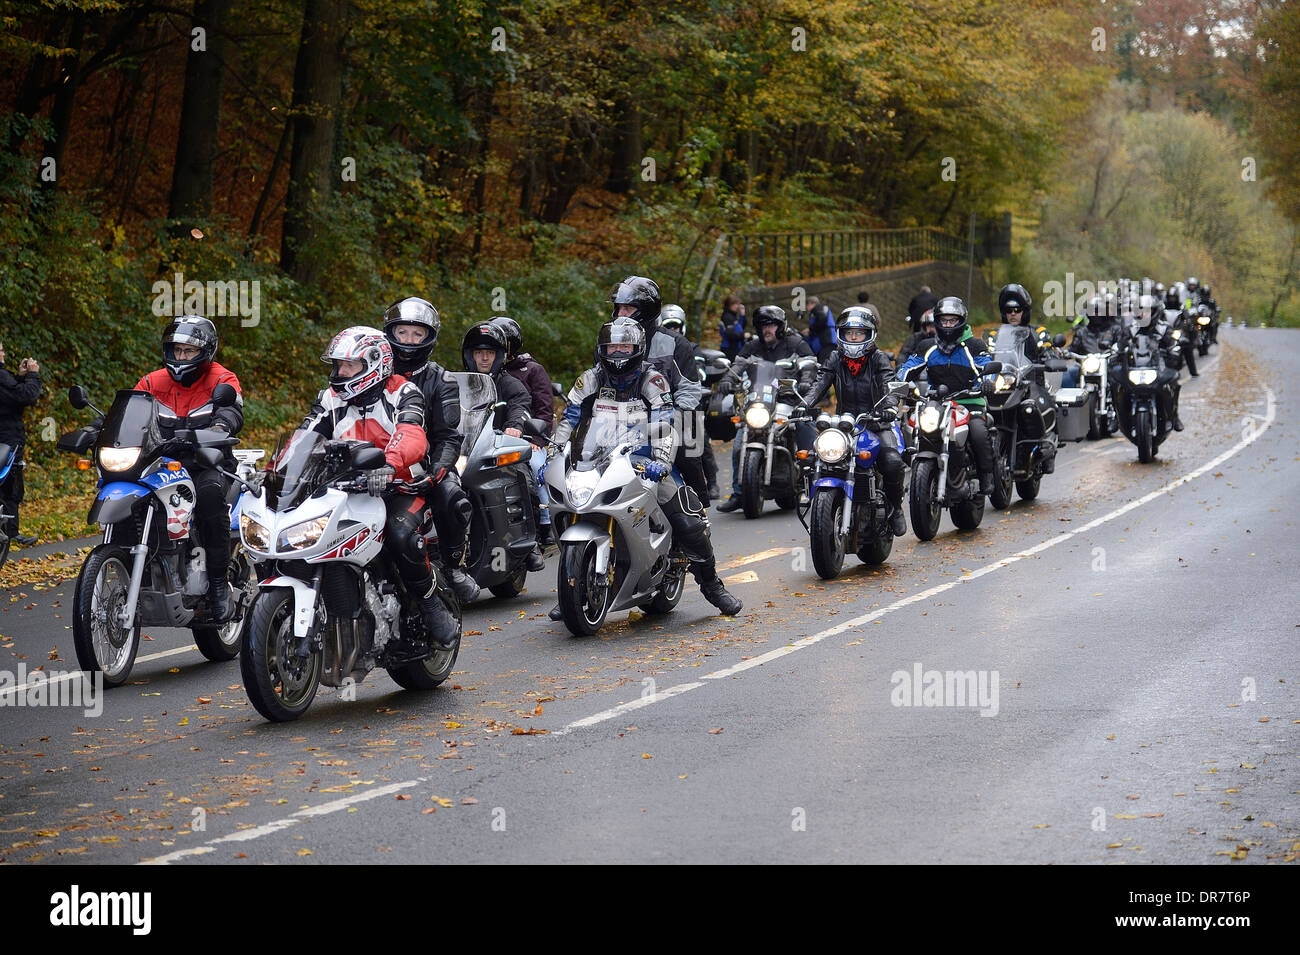 Memorial de paseo para los motociclistas, Odenthal-Altenberg, Renania del Norte-Westfalia, Alemania Foto de stock